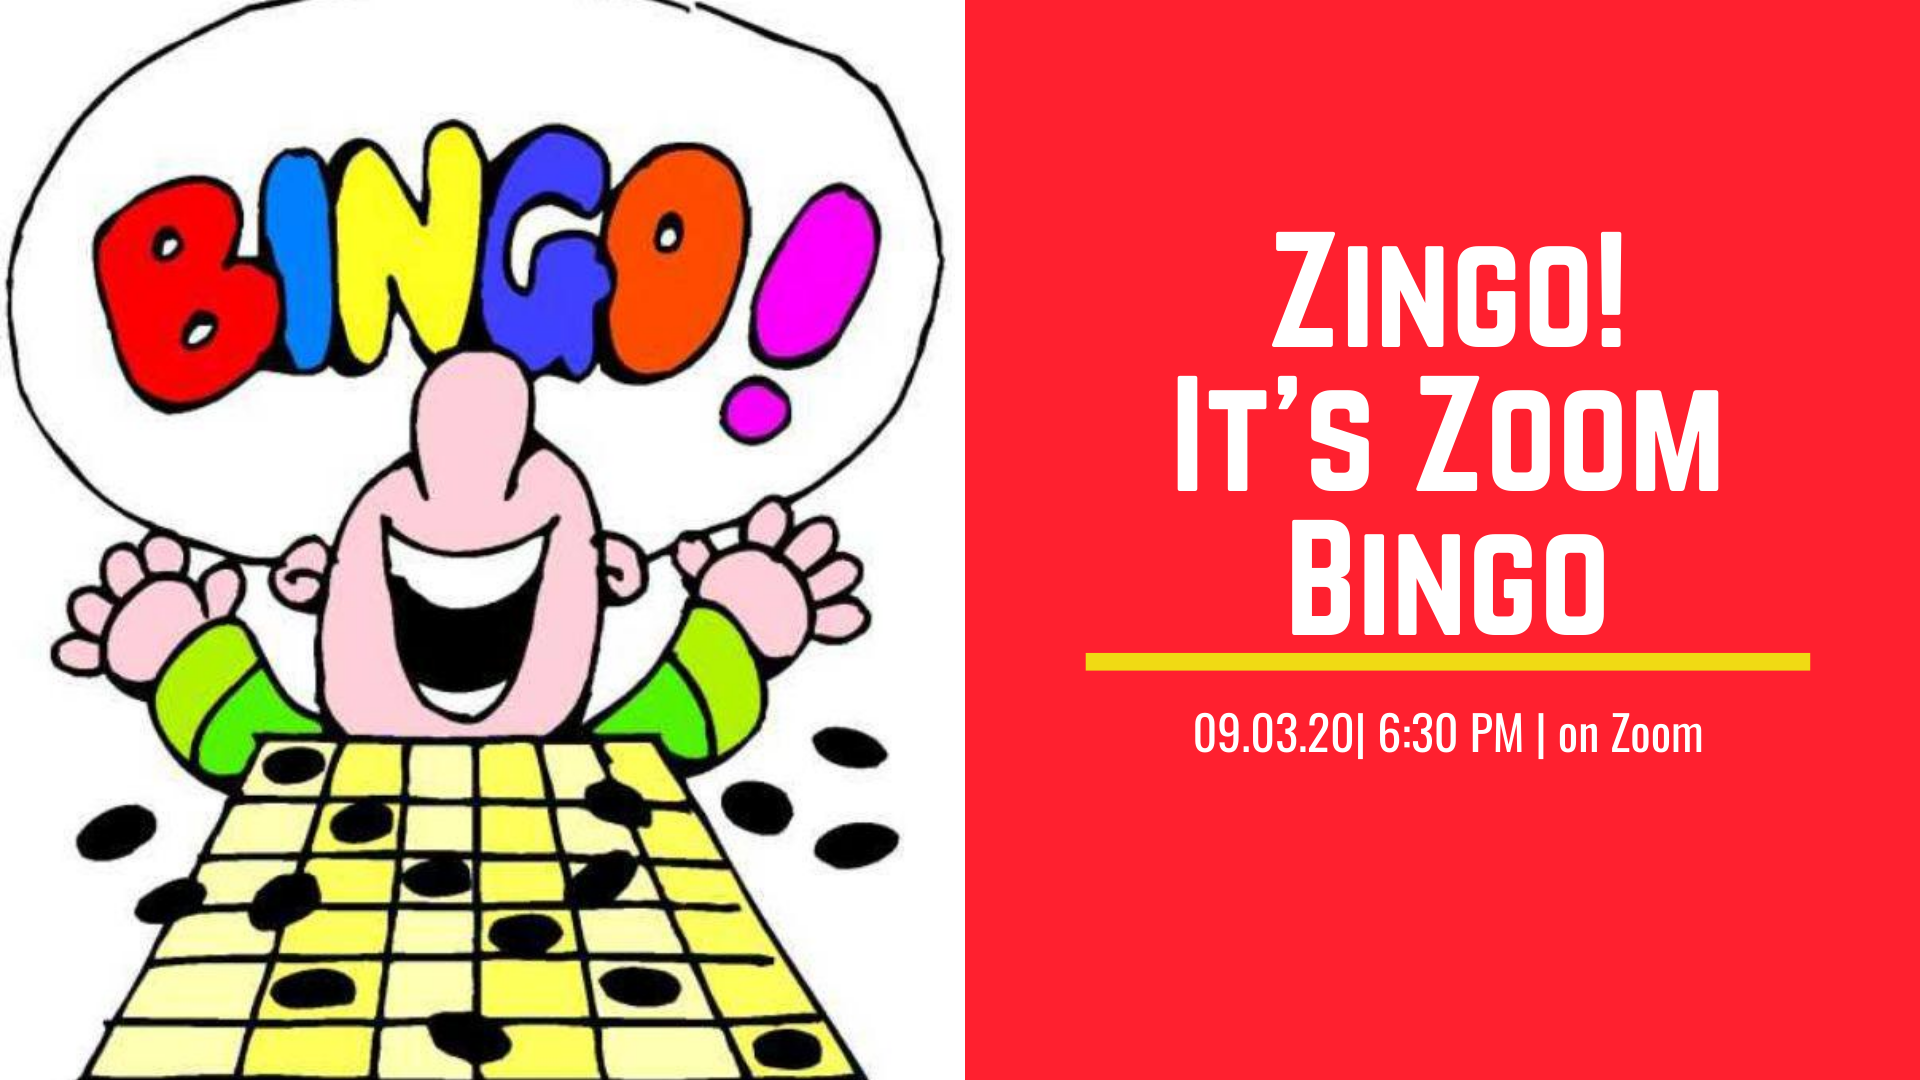 Cartoon man shouting "bingo!"